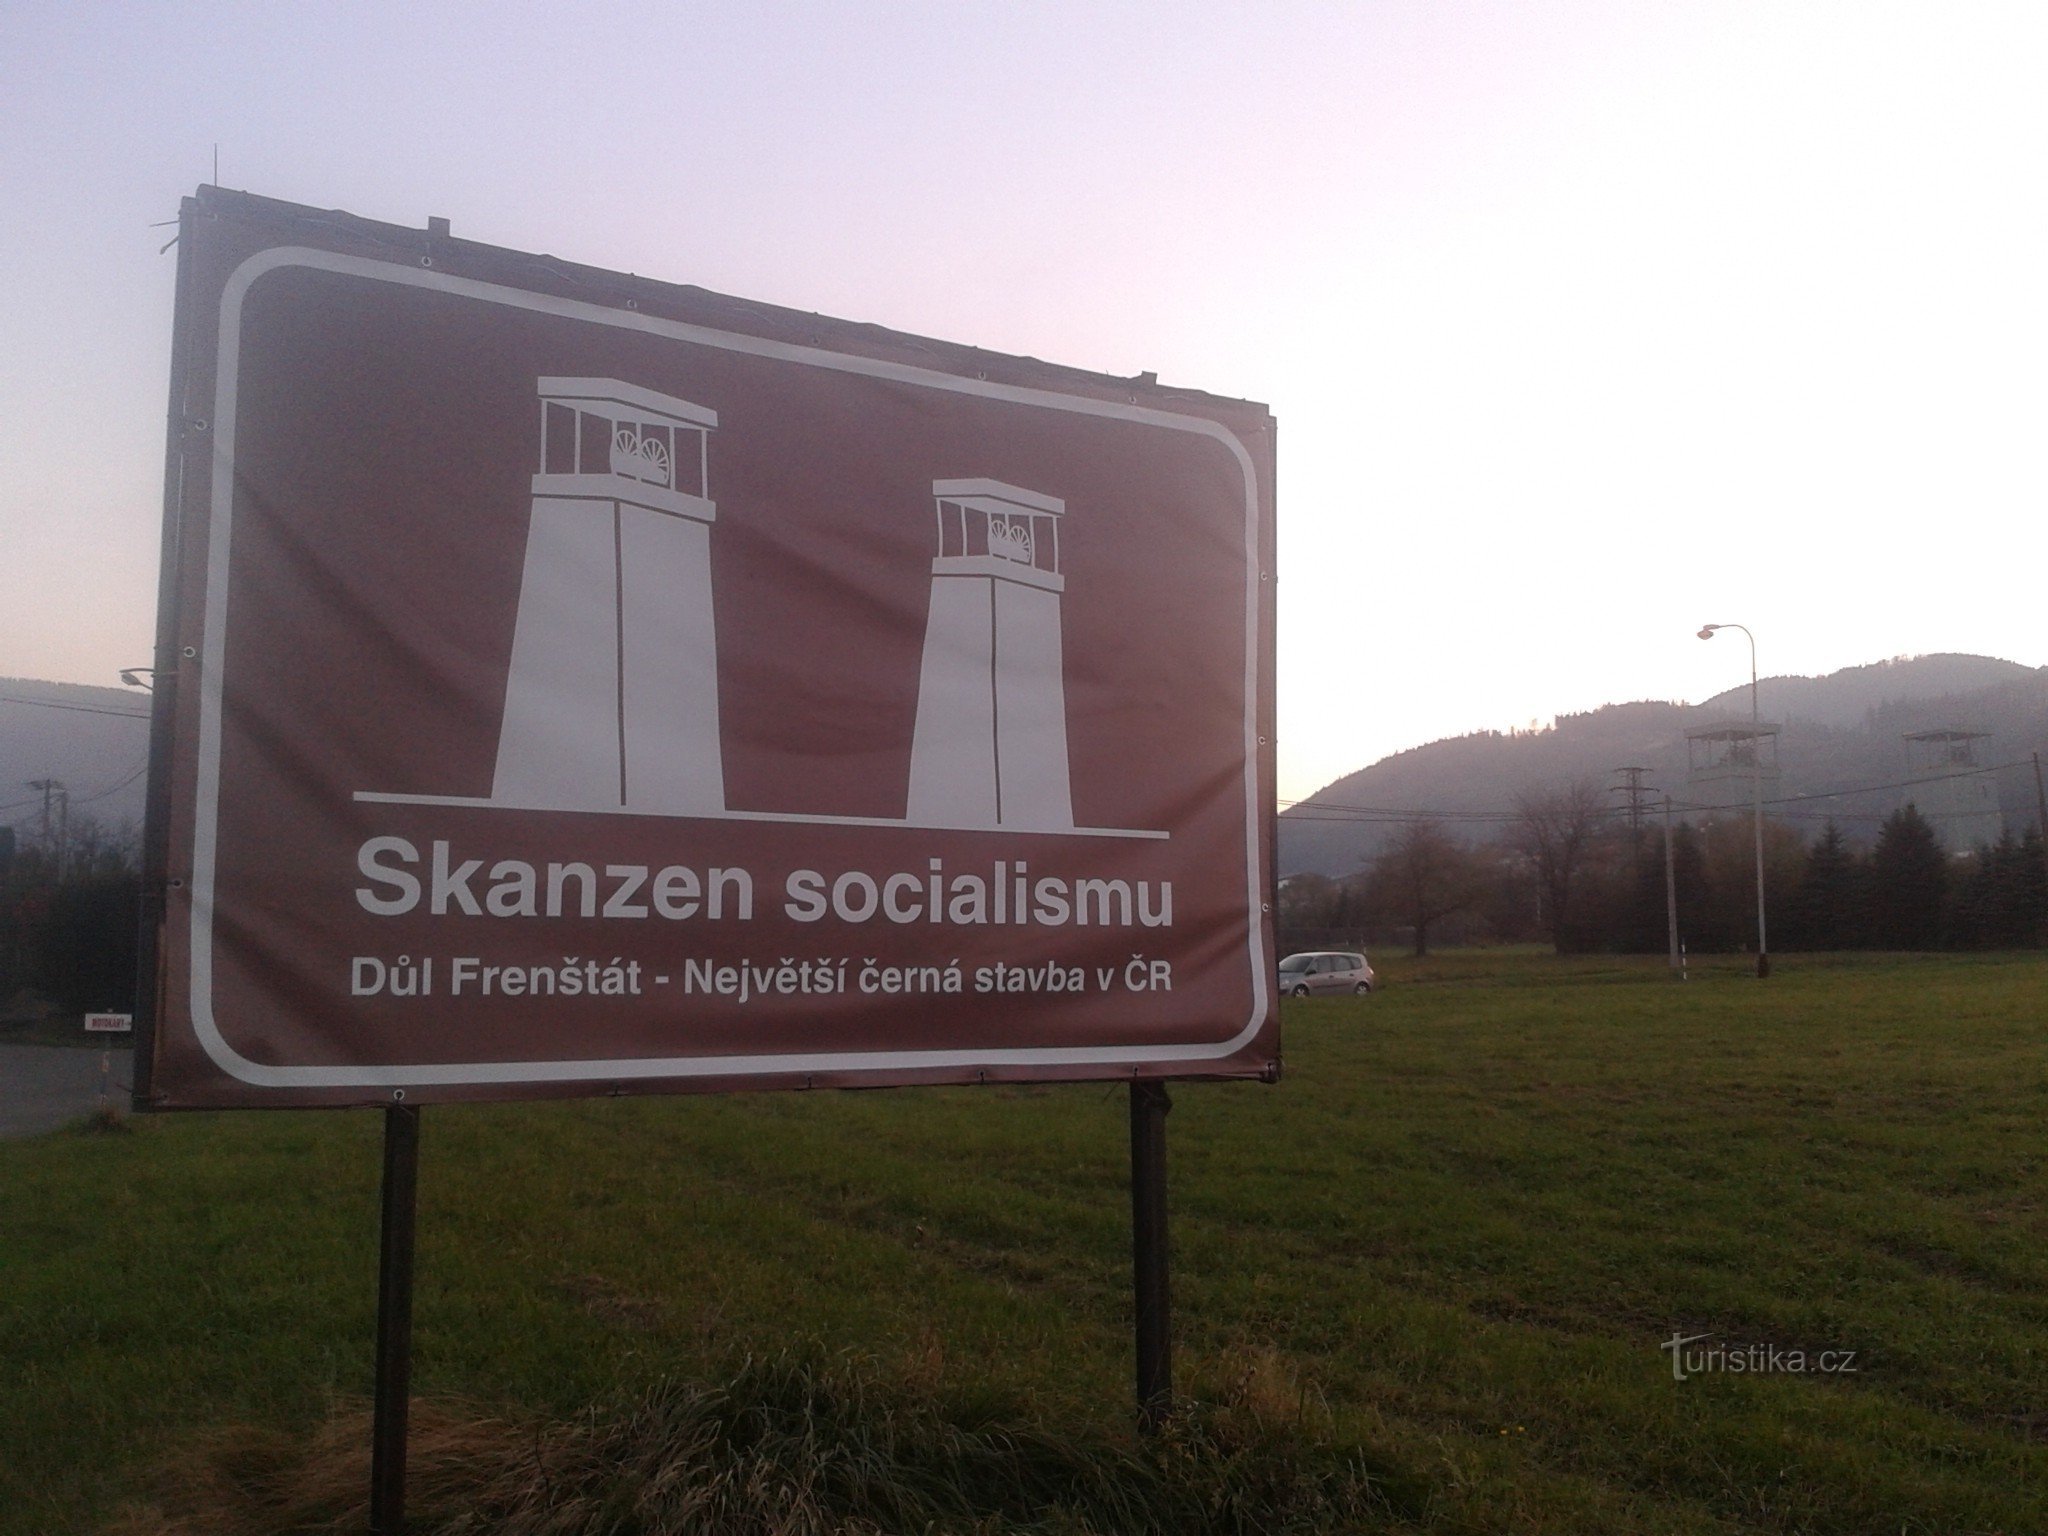 Το μεγαλύτερο σοσιαλιστικό υπαίθριο μουσείο στην Τσεχία